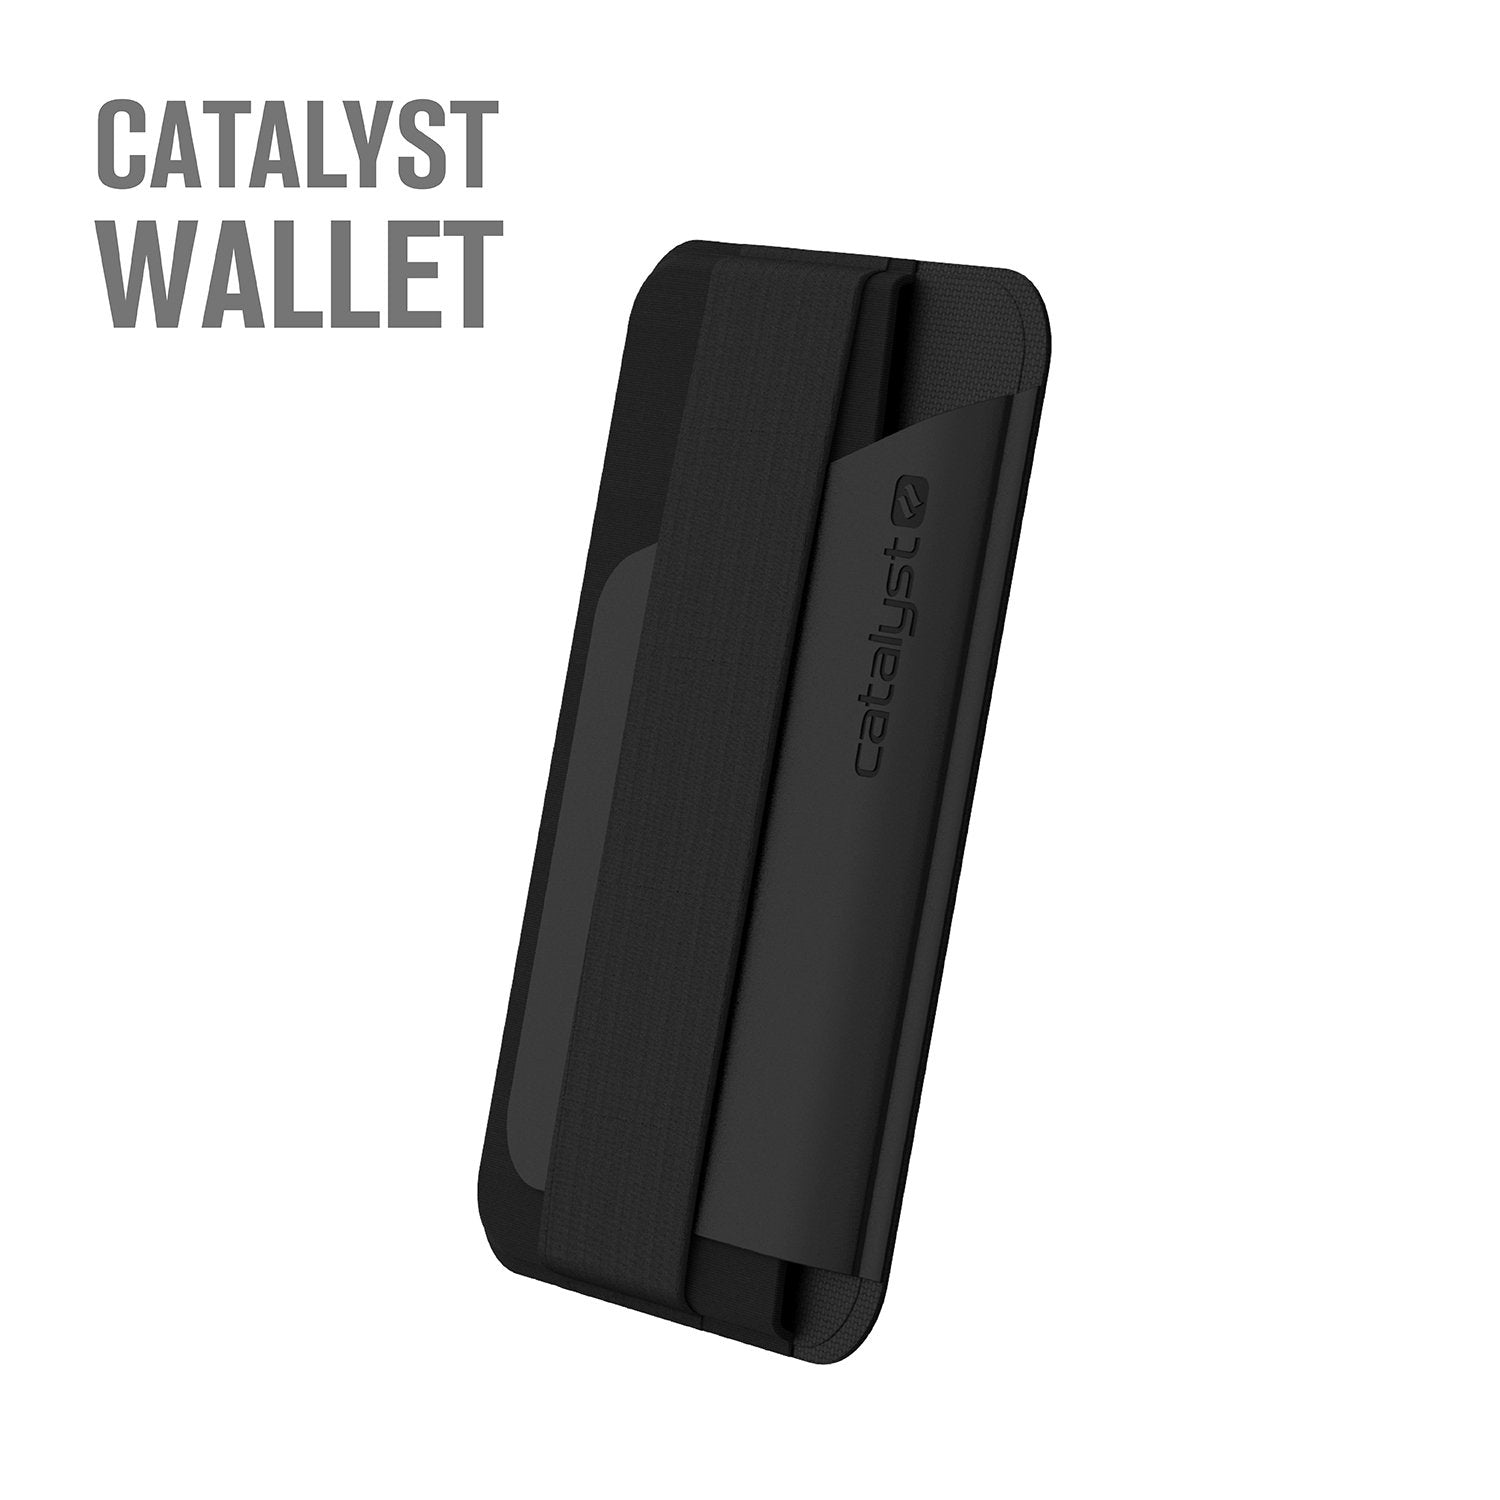 CATBUN05BLK | Commuter Bundle Accessories - Stick on Wallet